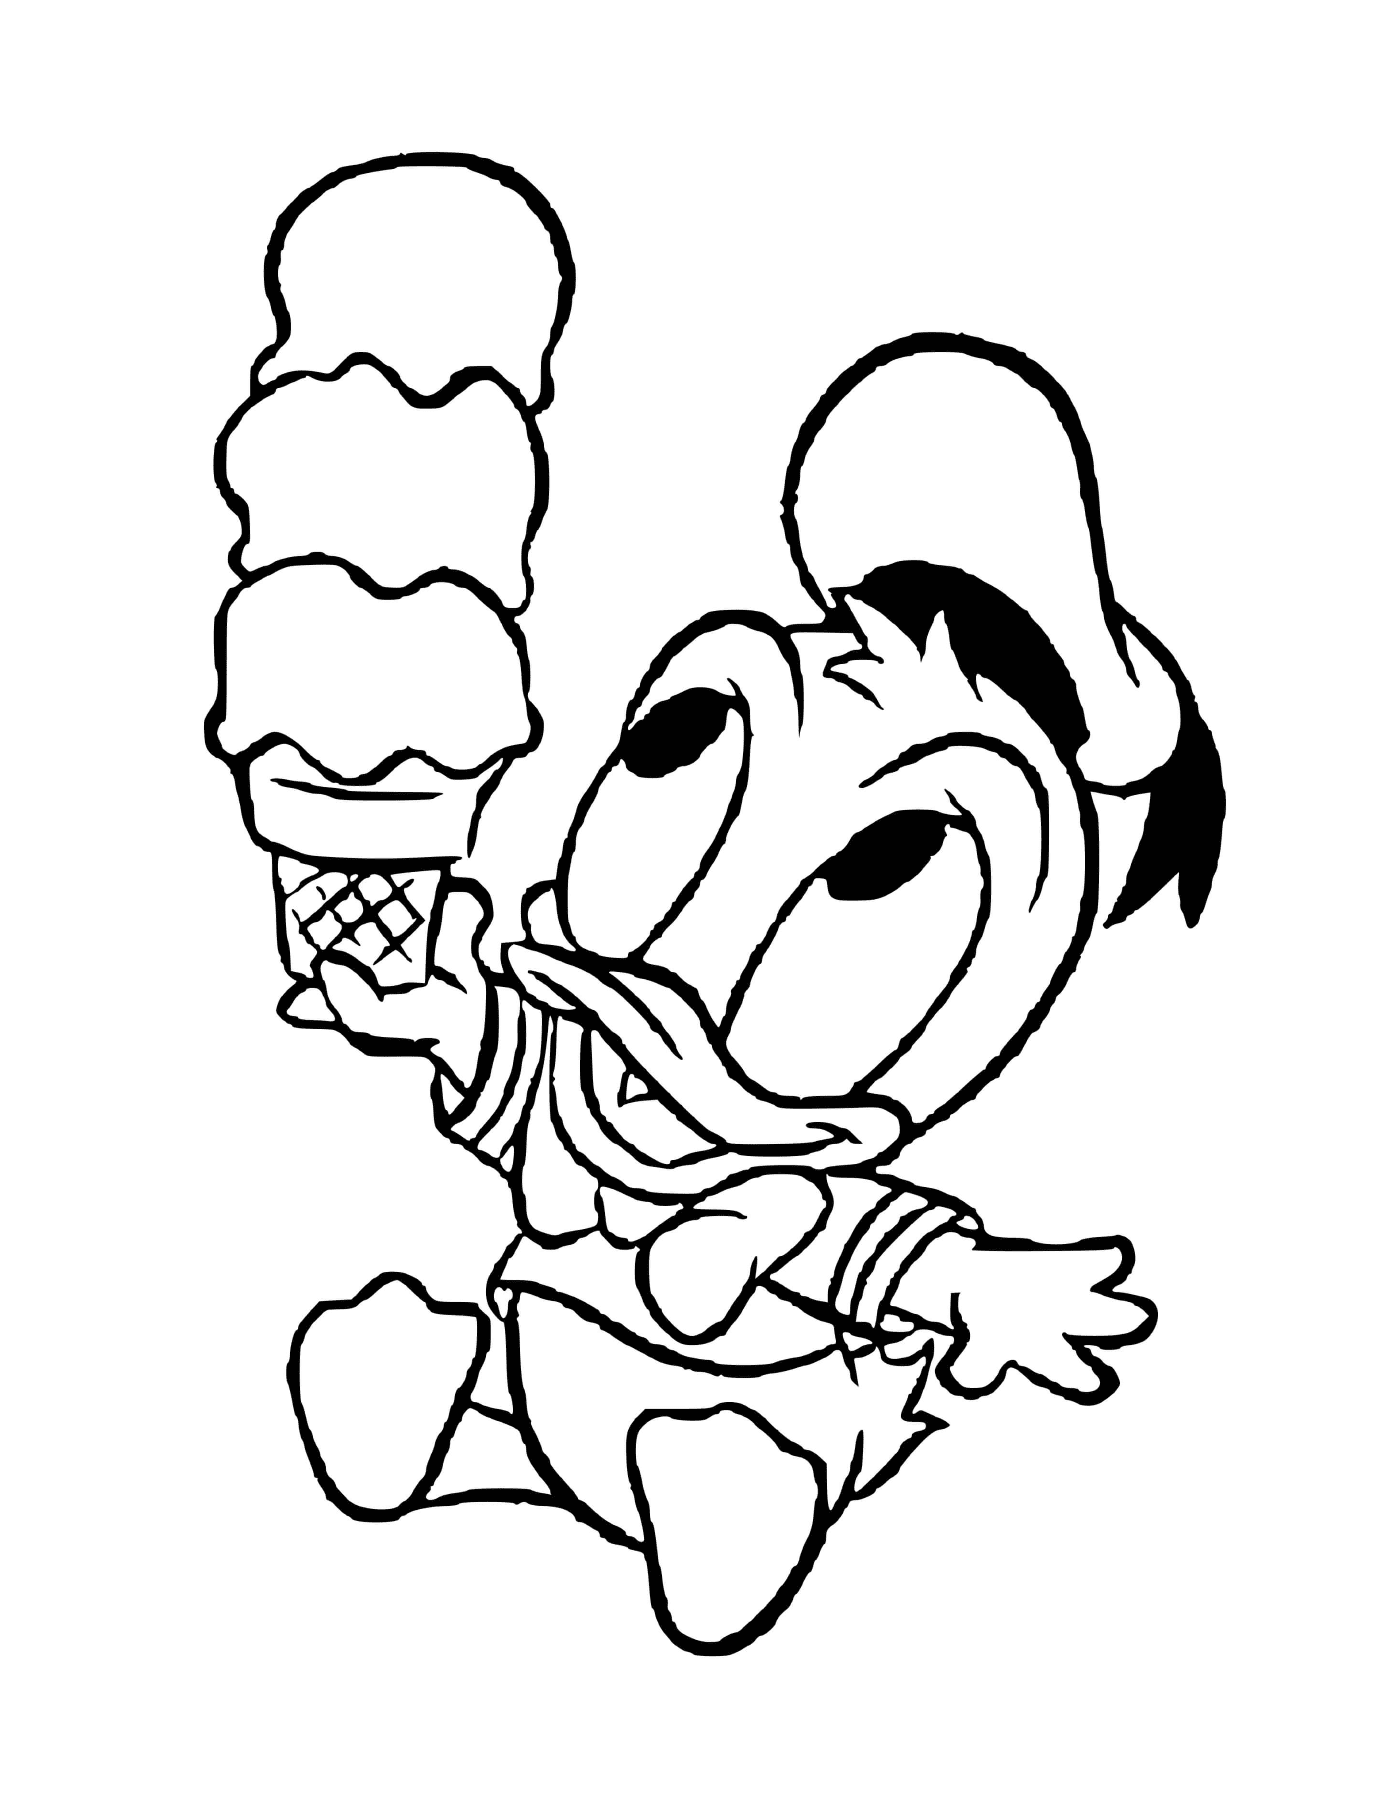  Donald Duck 宝宝喜欢吃冰淇淋 